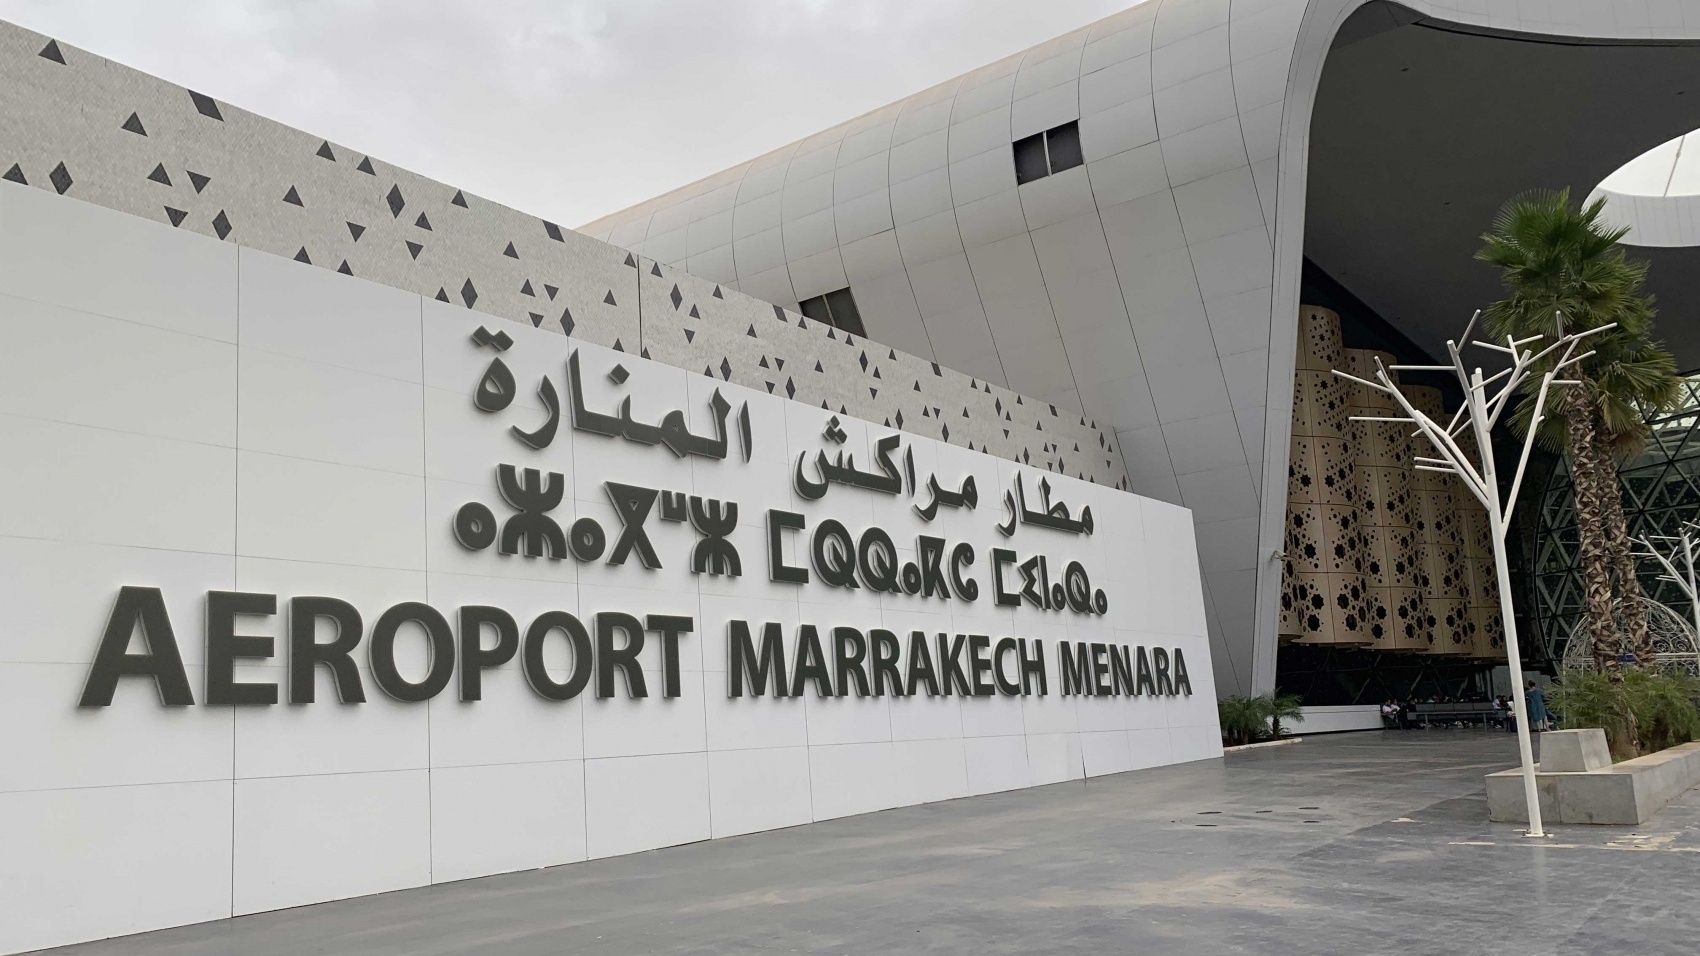 Ouverture prochaine de nouveaux vols reliant Marrakech et Dakhla